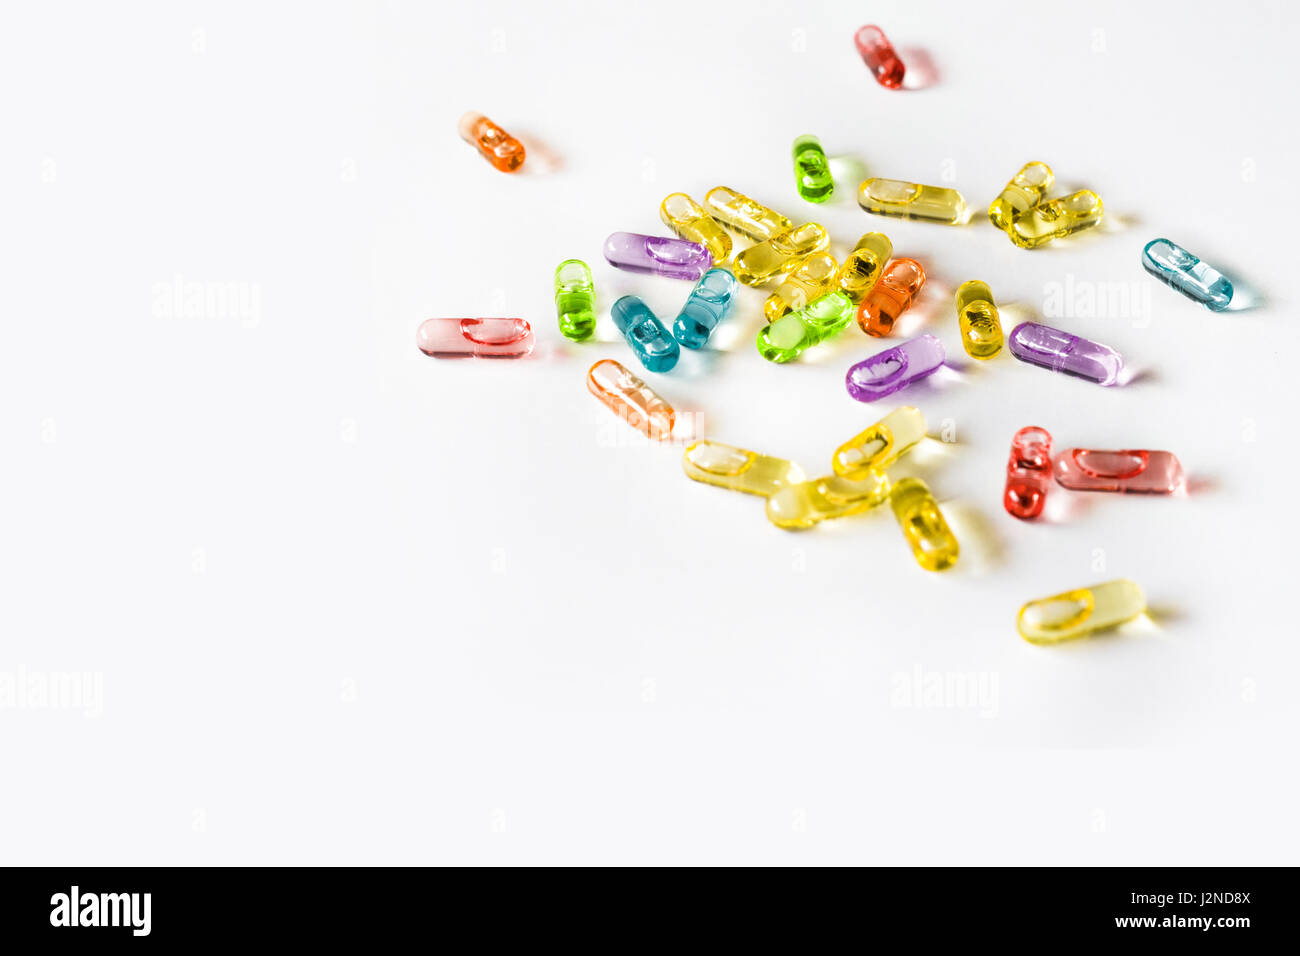 Kapsel Pillen verwenden in der Arzneimittelherstellung, Medikament, Medizin, Knoblauchöl, Lebertran. Stockfoto